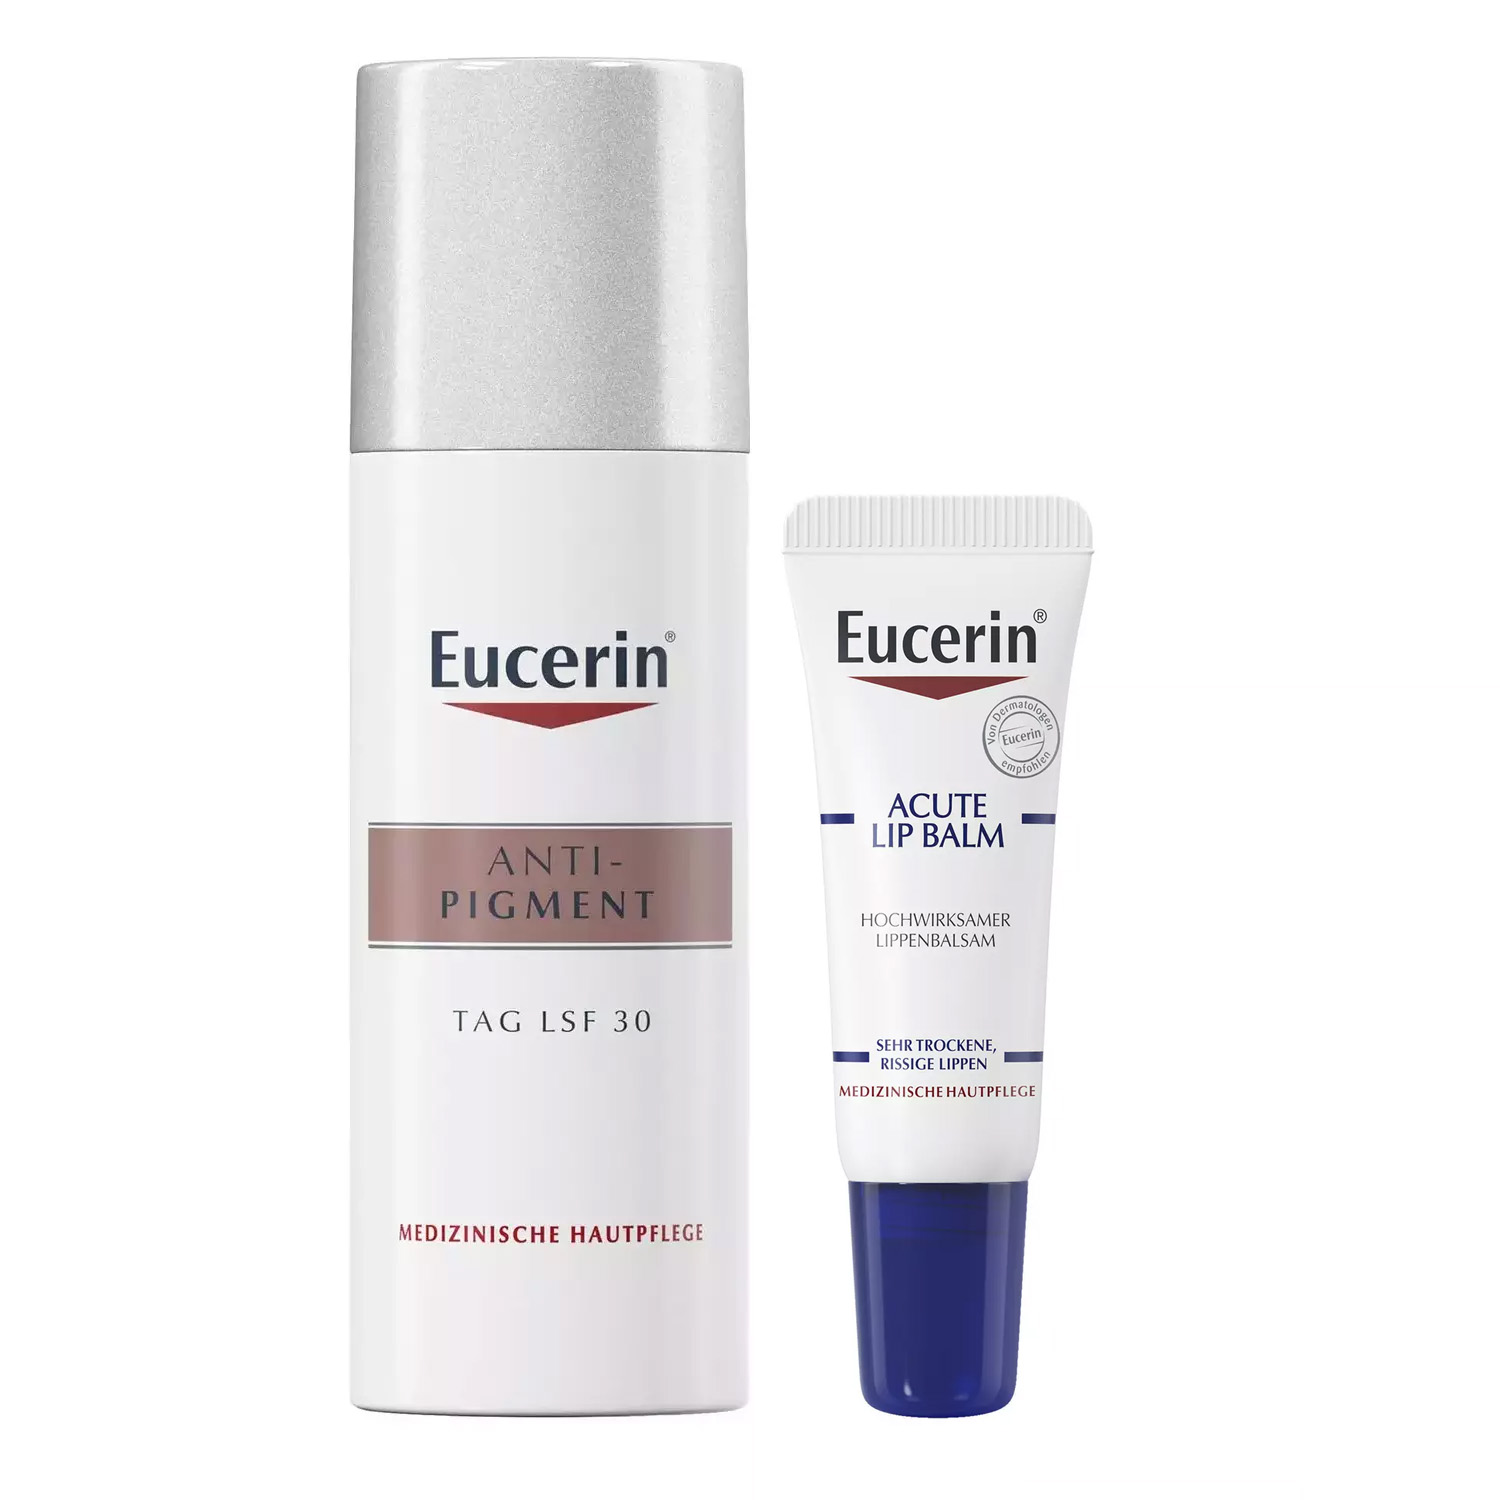 Eucerin Набор для ухода за кожей: бальзам для губ, 10 мл + крем дневной SPF30+, 50 мл (Eucerin, Anti-Pigment) крем против пигментации ночной anti pigment eucerin эуцерин 50мл